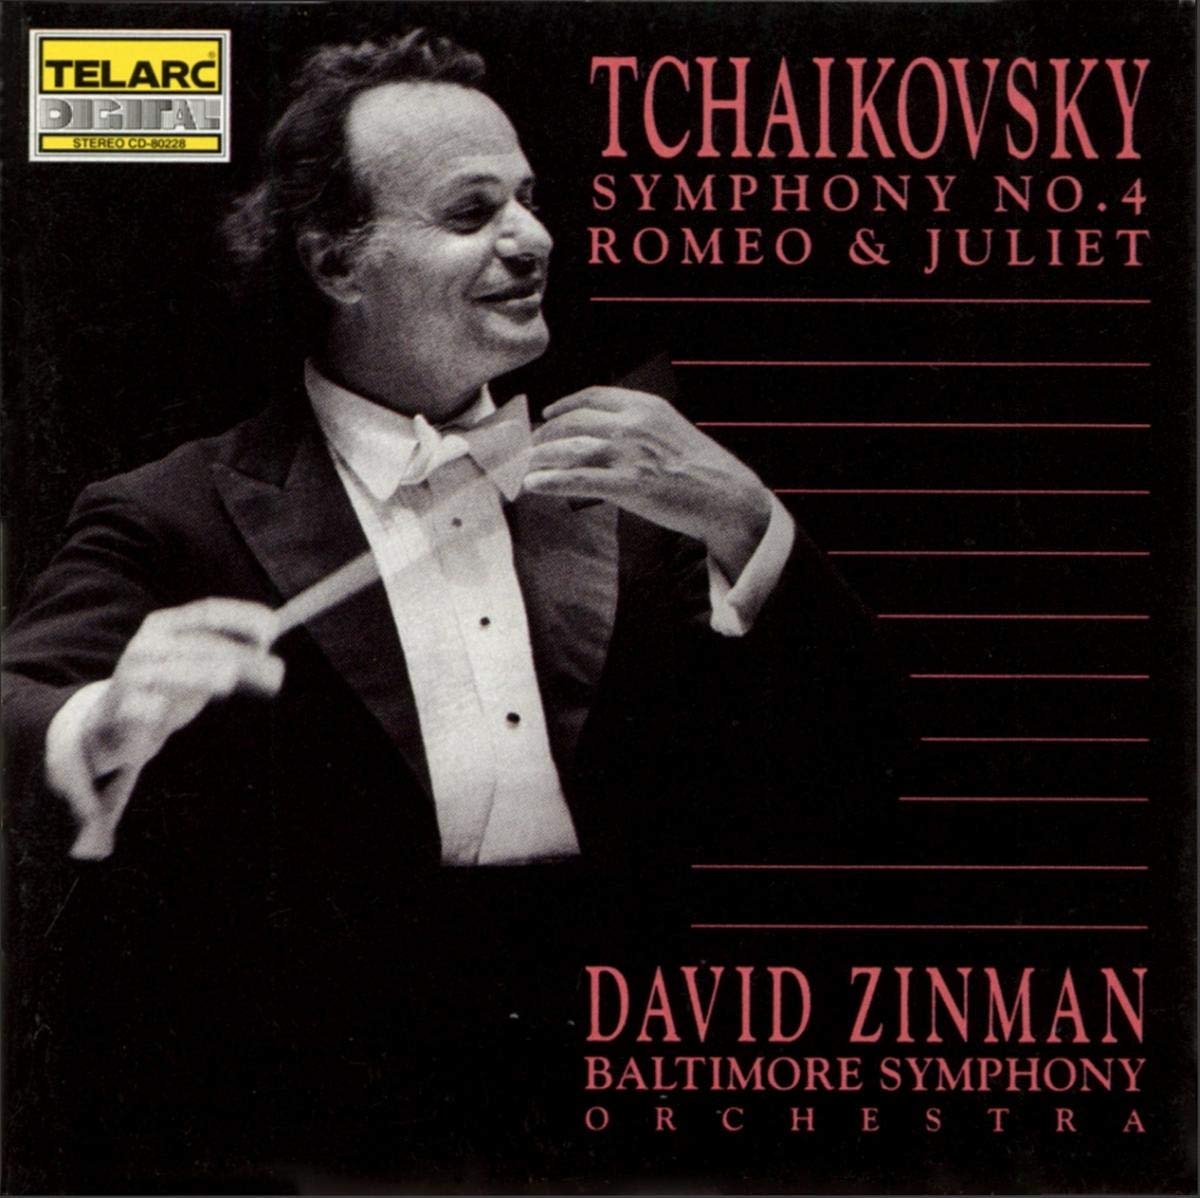 TCHAIKOVSKY: SYMPHONY NO. 4; ROMEO & JULIET - Zinman, Baltimore Symphony Orchestra